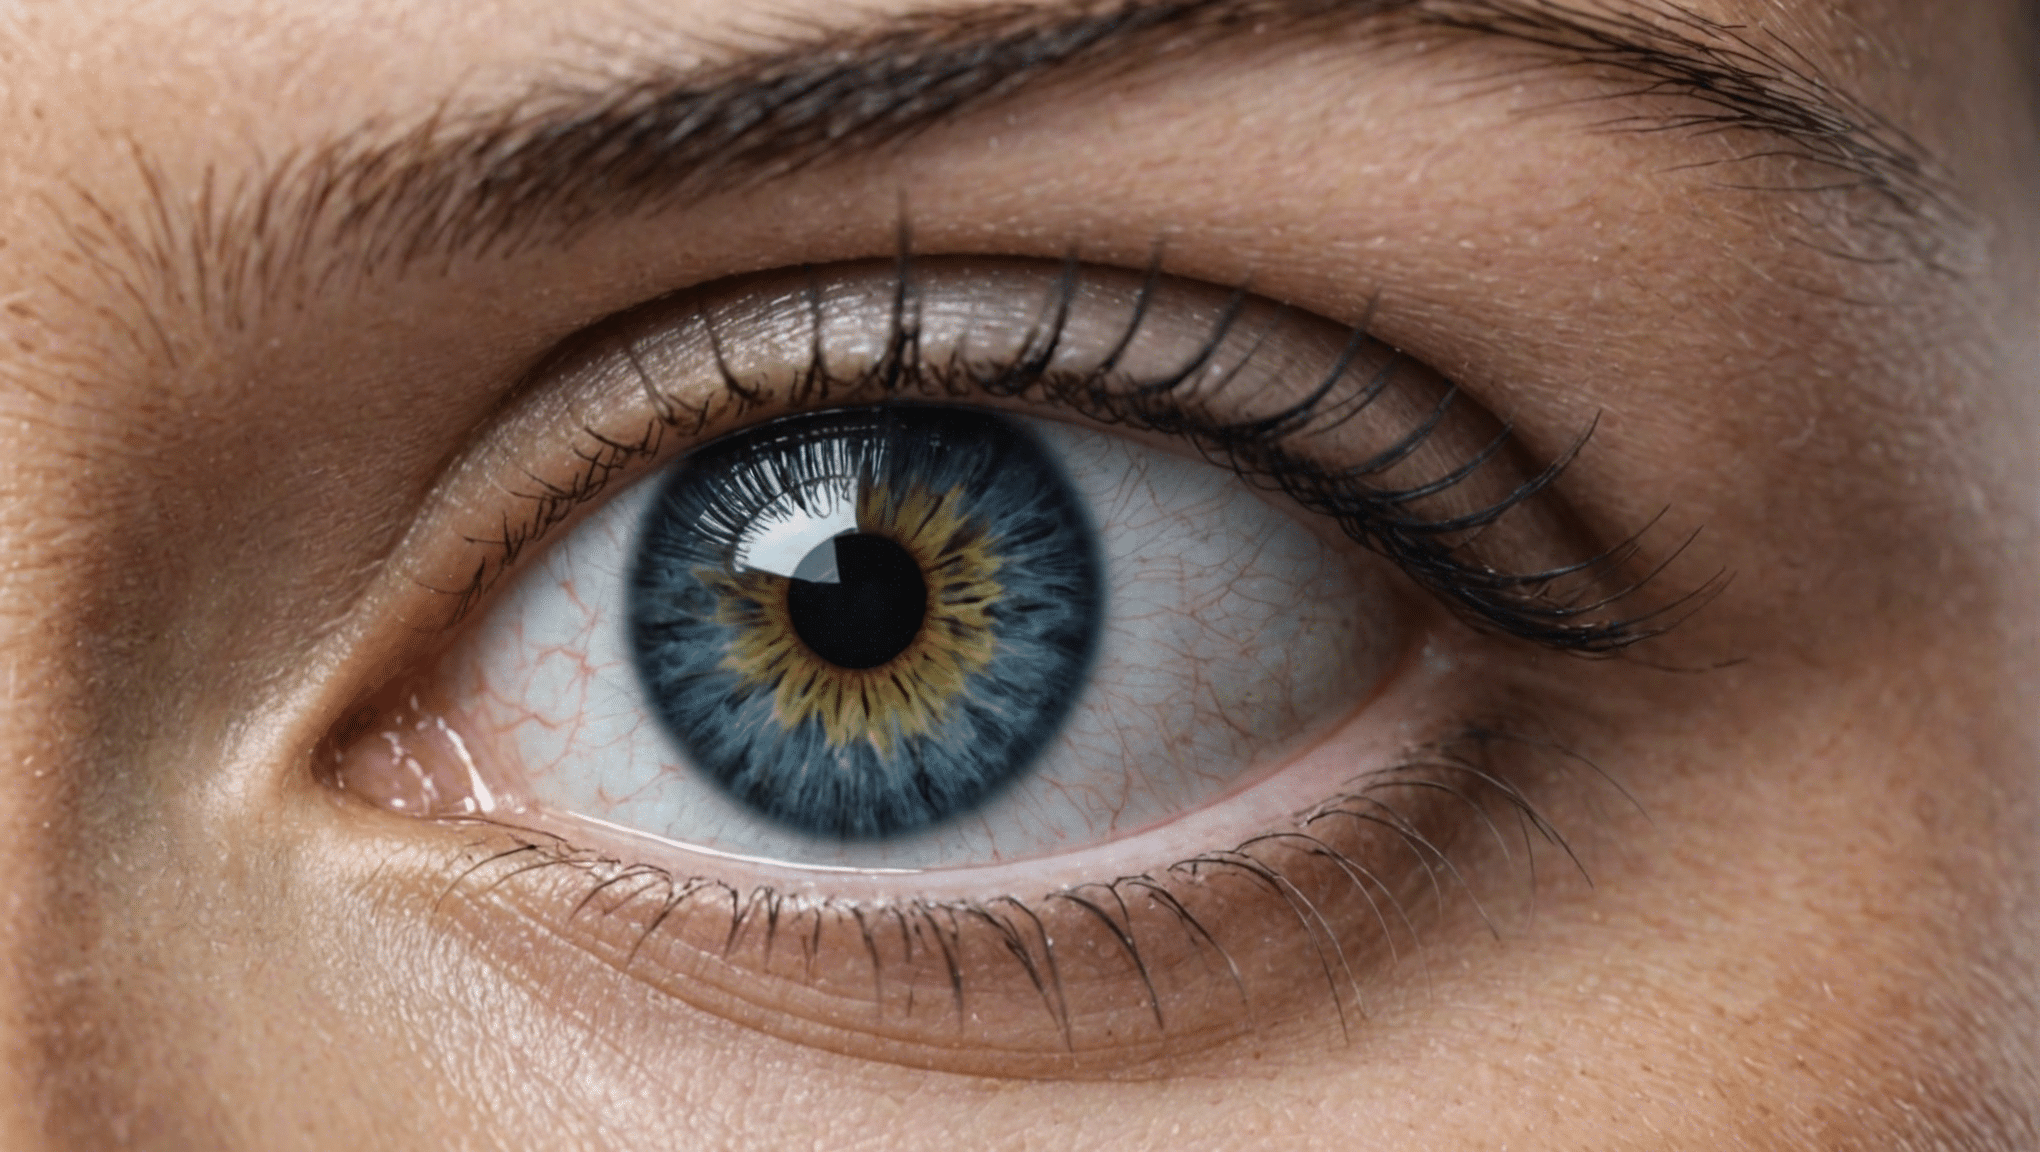 découvrez nos conseils pour prendre soin de vos yeux et maintenir une vision saine. astuces et recommandations pour préserver la santé de vos yeux au quotidien.